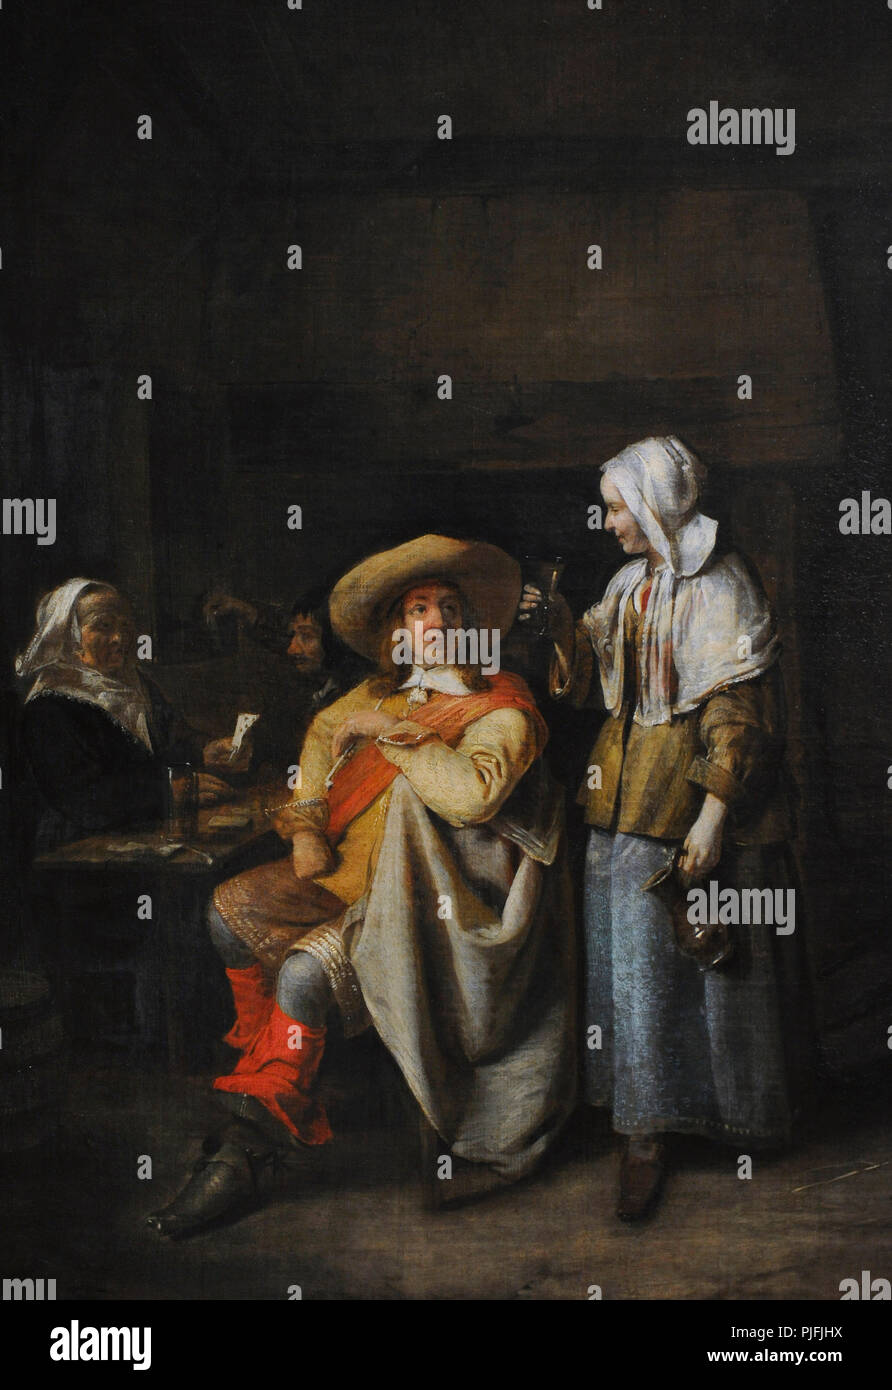 Pieter de Hooch (1629-1684). Niederländisch Golden Age Maler. Offizier und zwei Spieler, 1652-1655. Detail. Wallraf-Richartz-Museum. Köln. Deutschland. Stockfoto